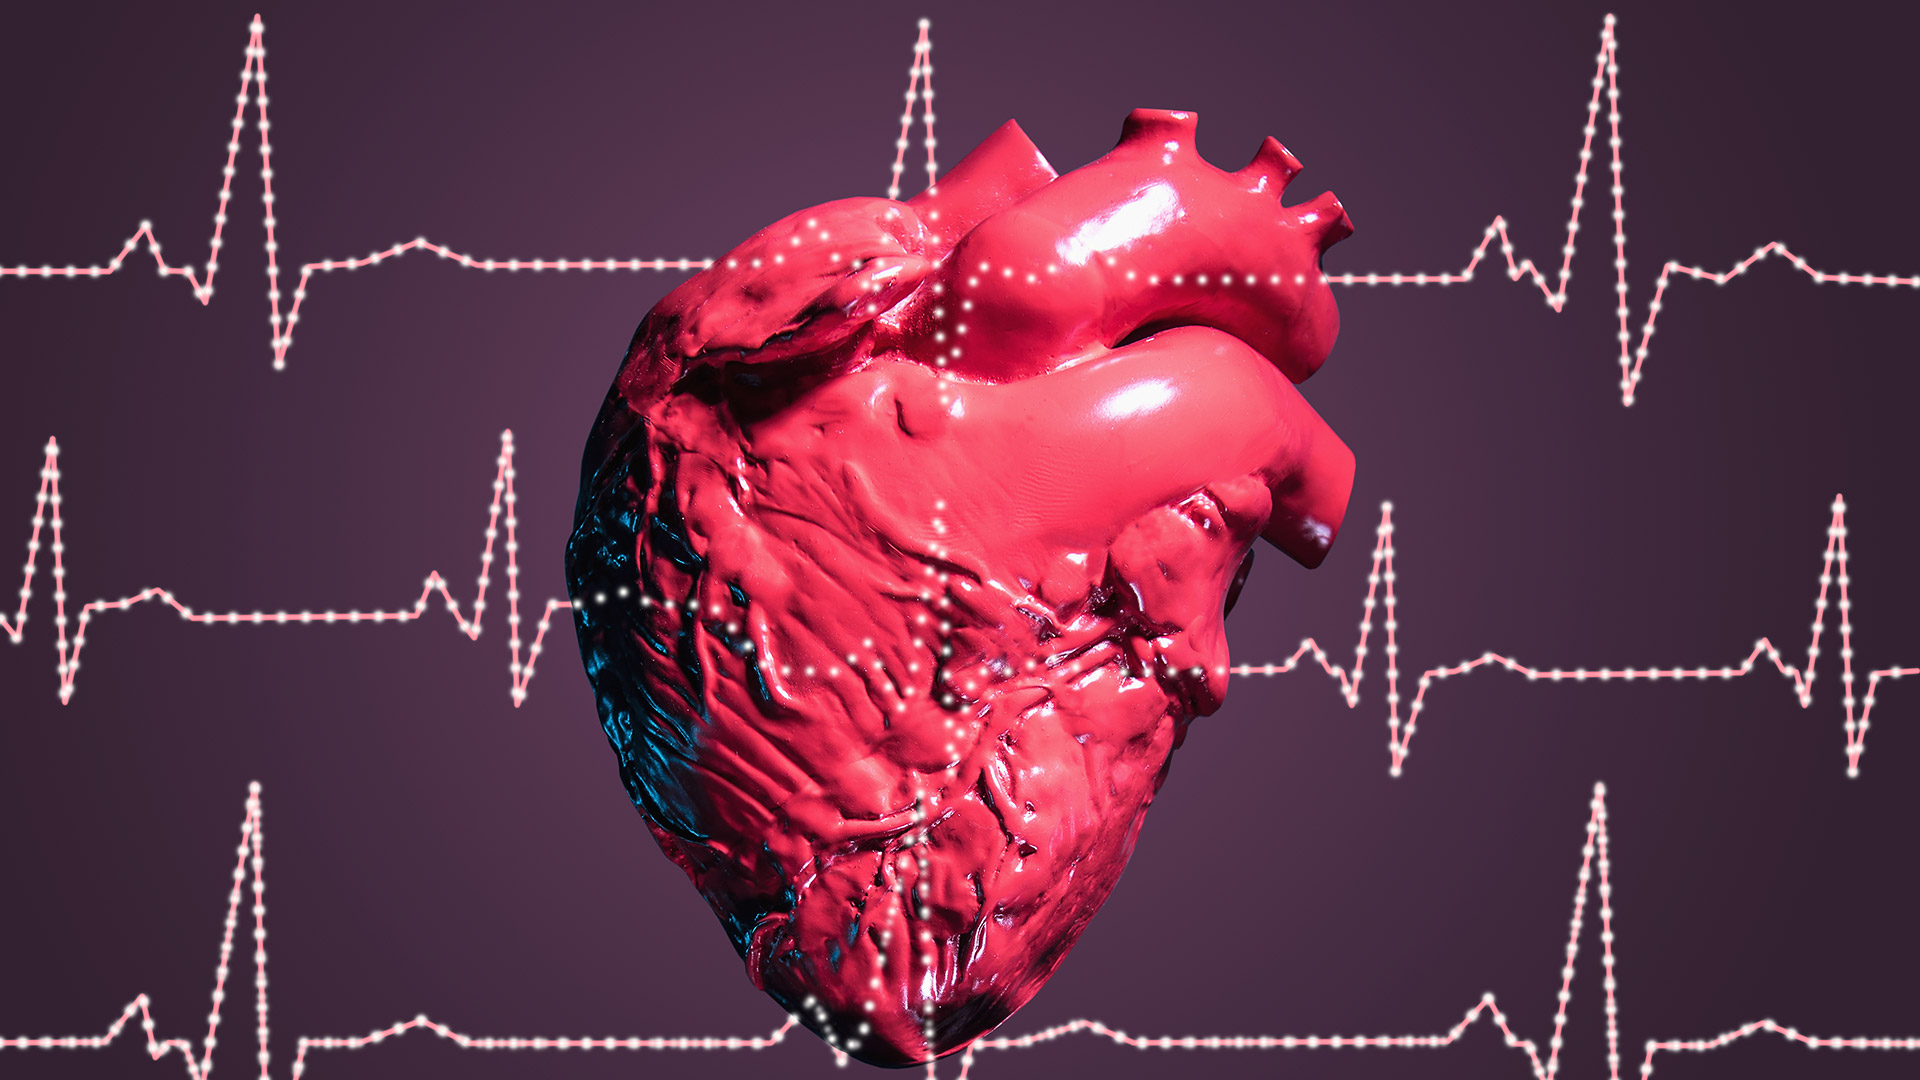 Una frecuencia cardíaca en reposo normal para los adultos oscila entre 60 y 100 latidos por minuto (Getty)

